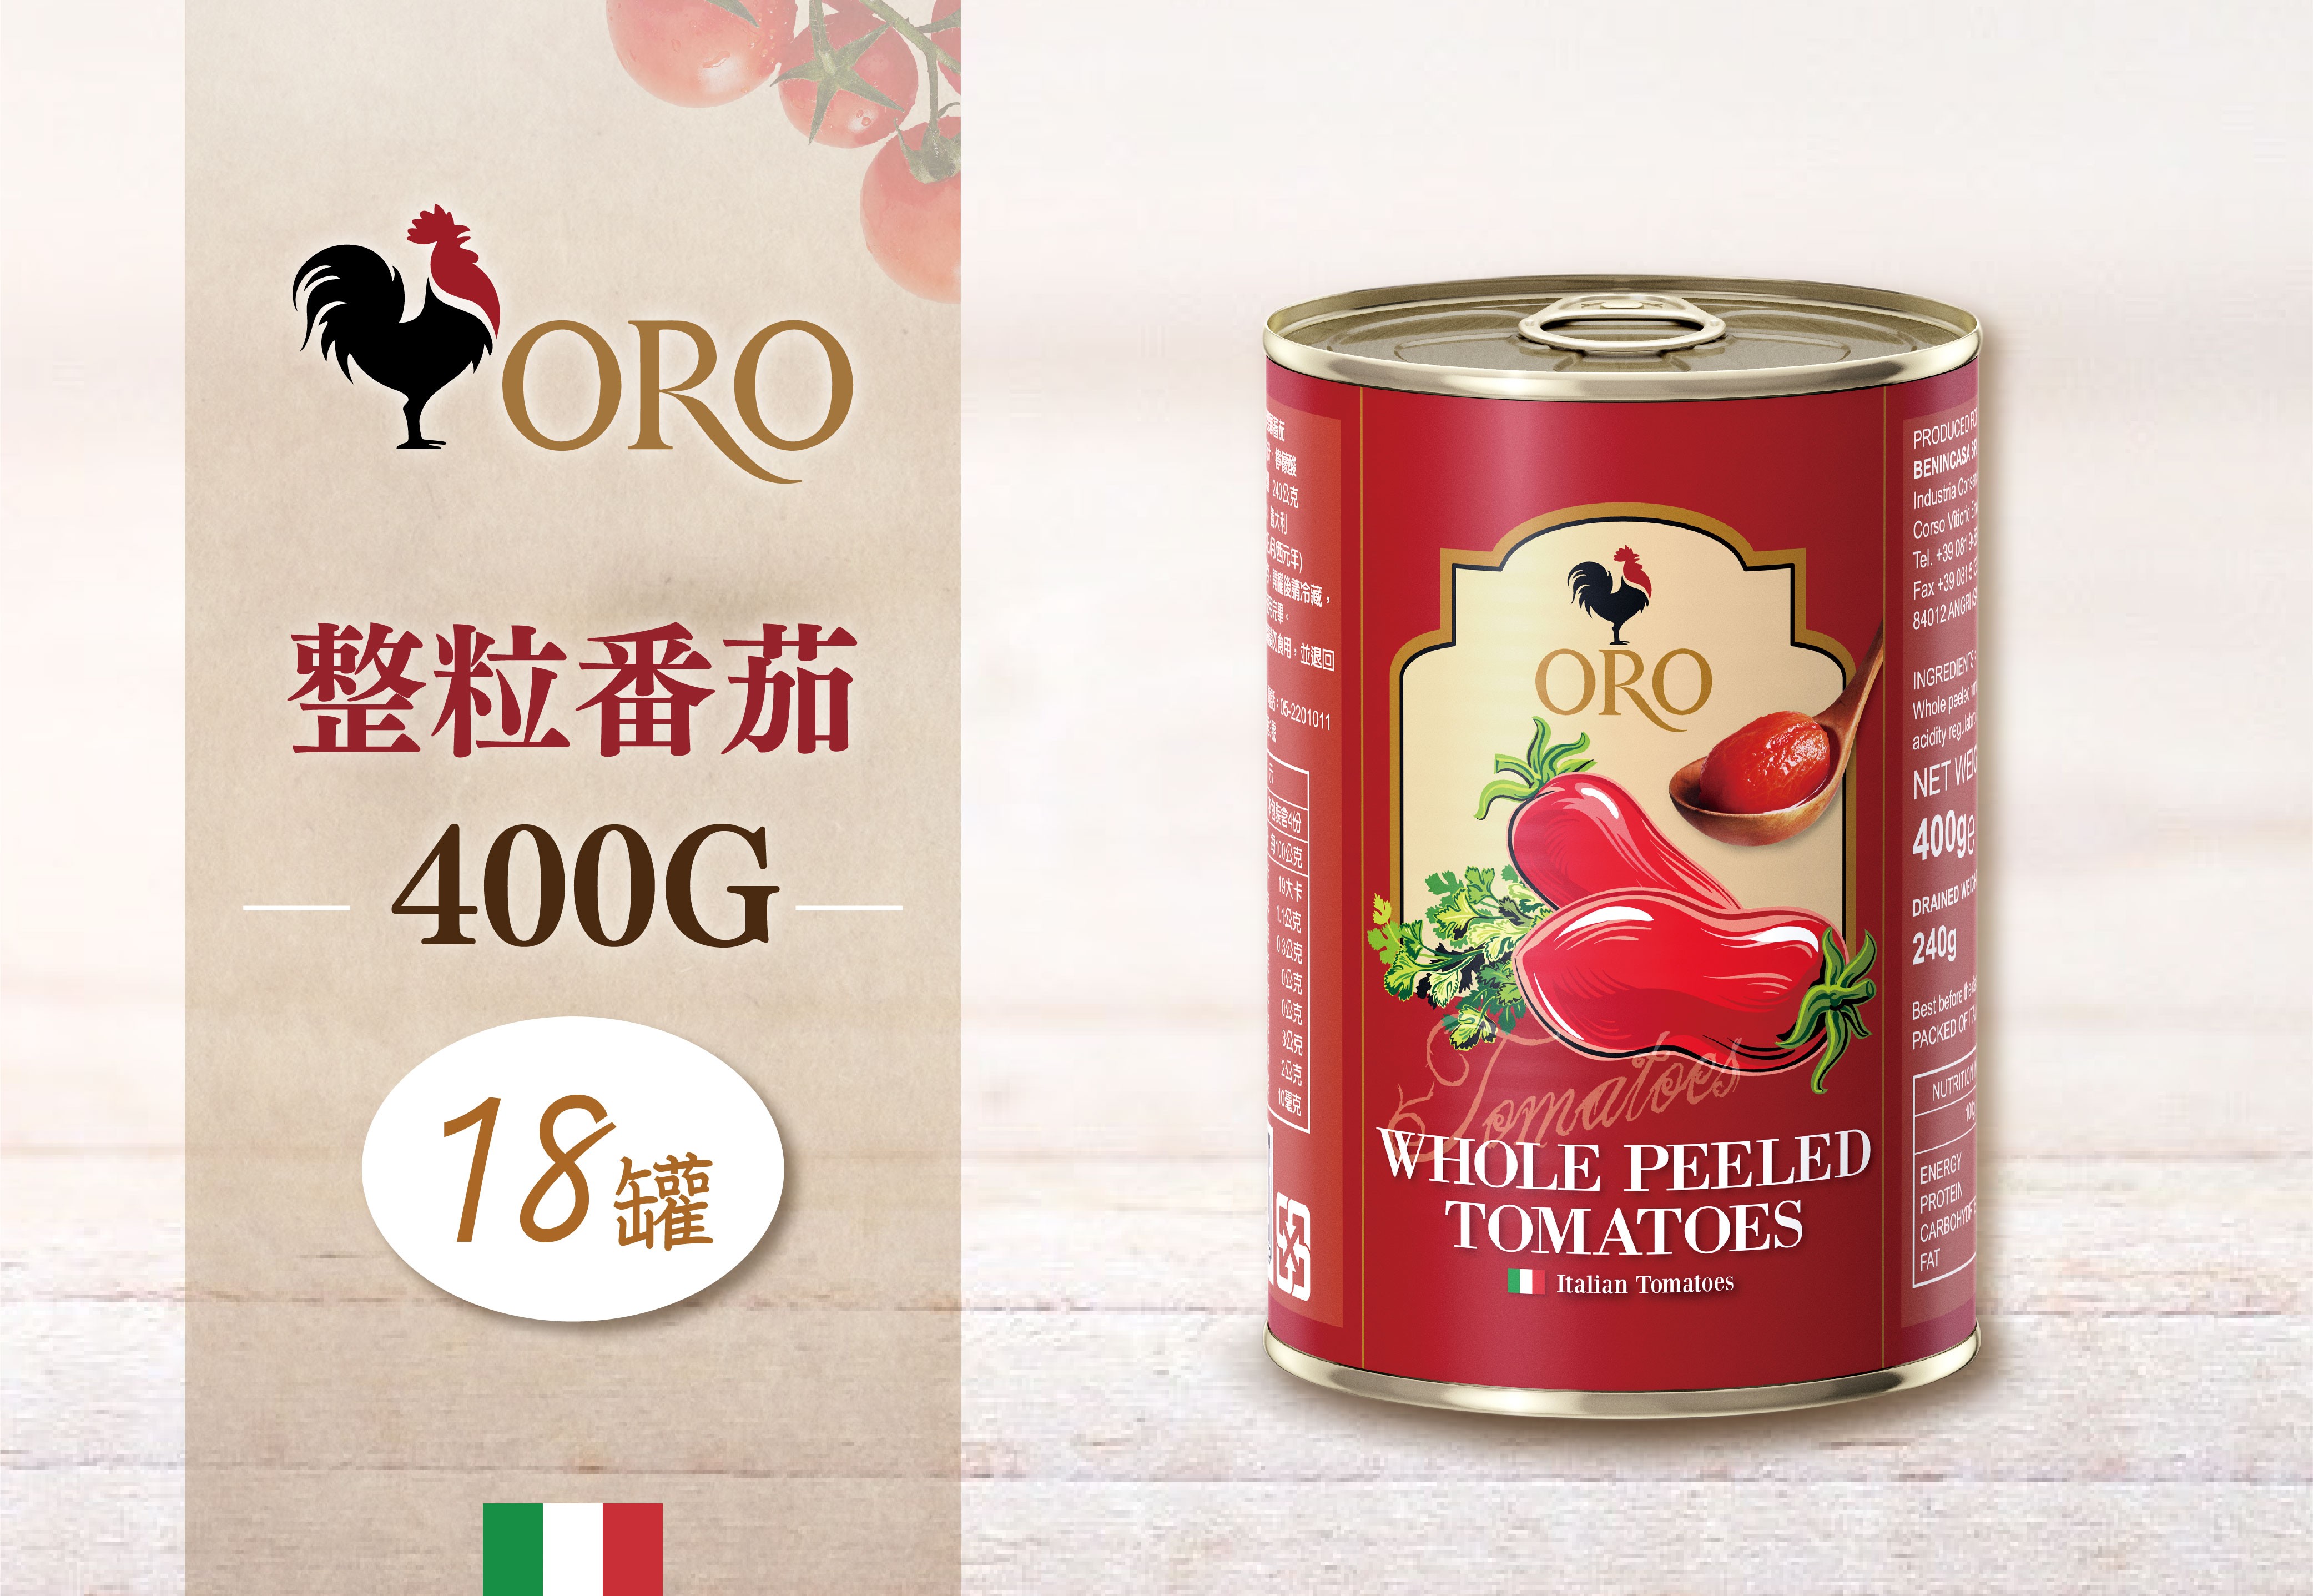 義大利ORO整顆番茄粒*18罐組 (400g) ◖2 組更優惠◗